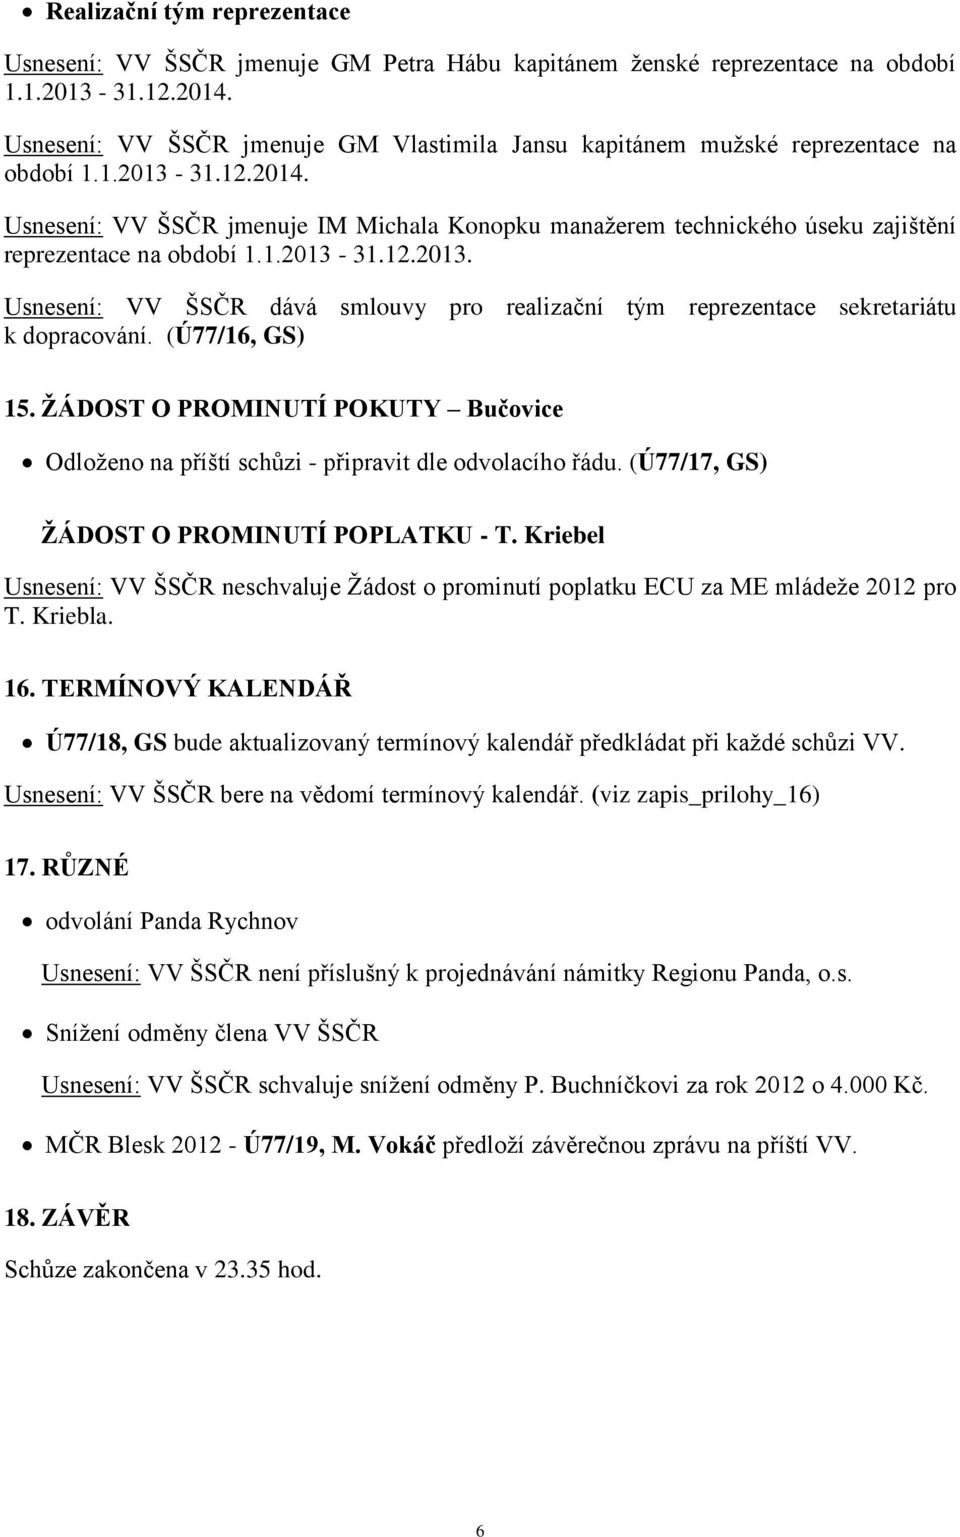 Usnesení: VV ŠSČR jmenuje IM Michala Konopku manažerem technického úseku zajištění reprezentace na období 1.1.2013-